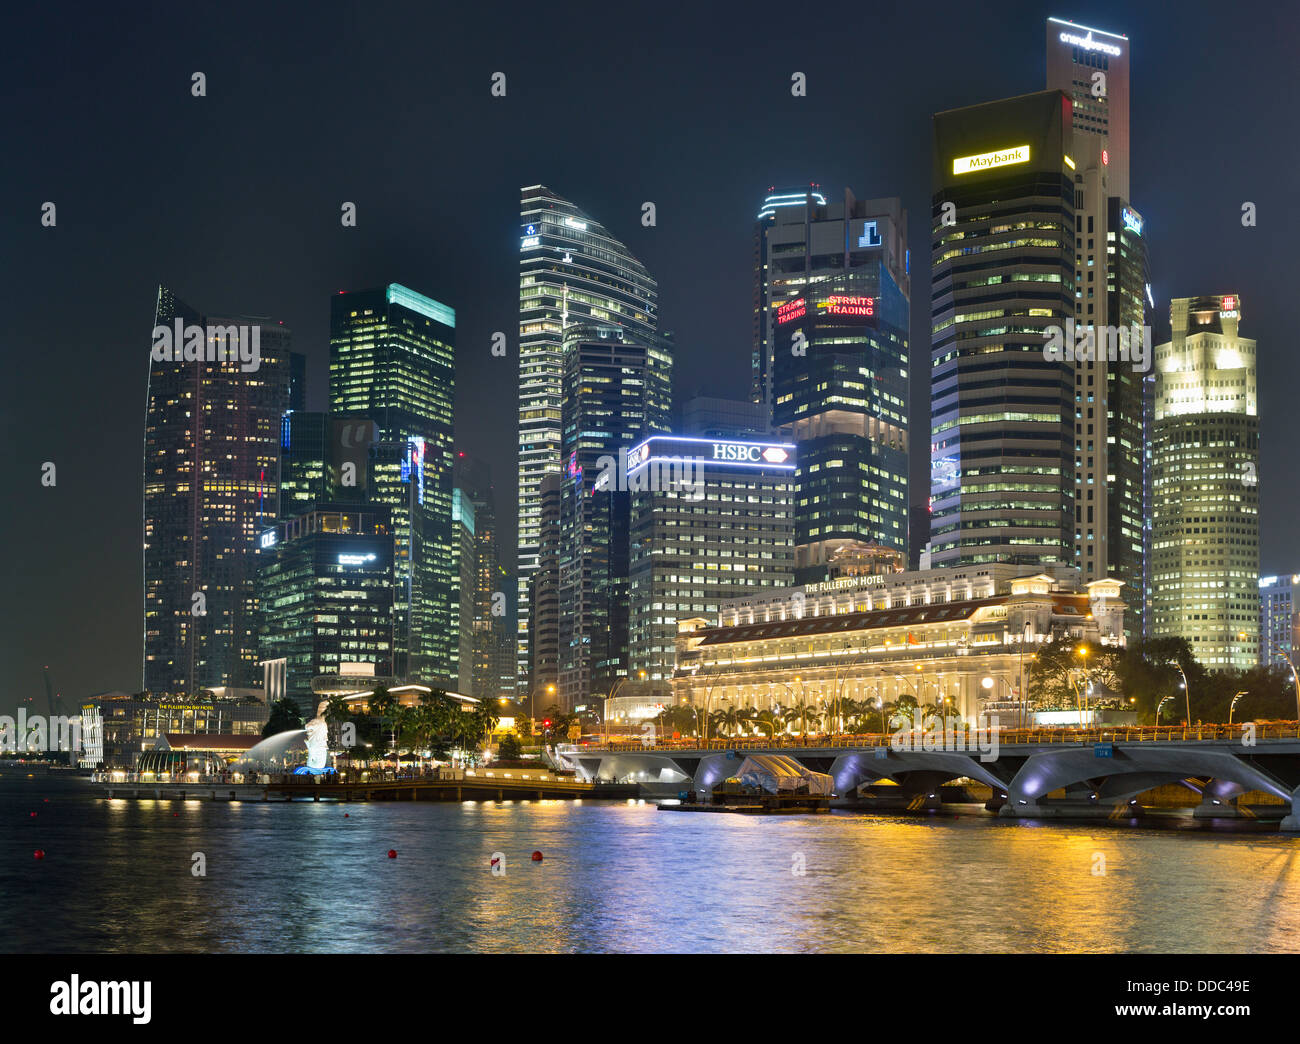 Dh Marina Bay ville gratte-ciel de Singapour au centre-ville le soir, nuit lumières crépuscule paysage urbain skyline skyscrapers Banque D'Images